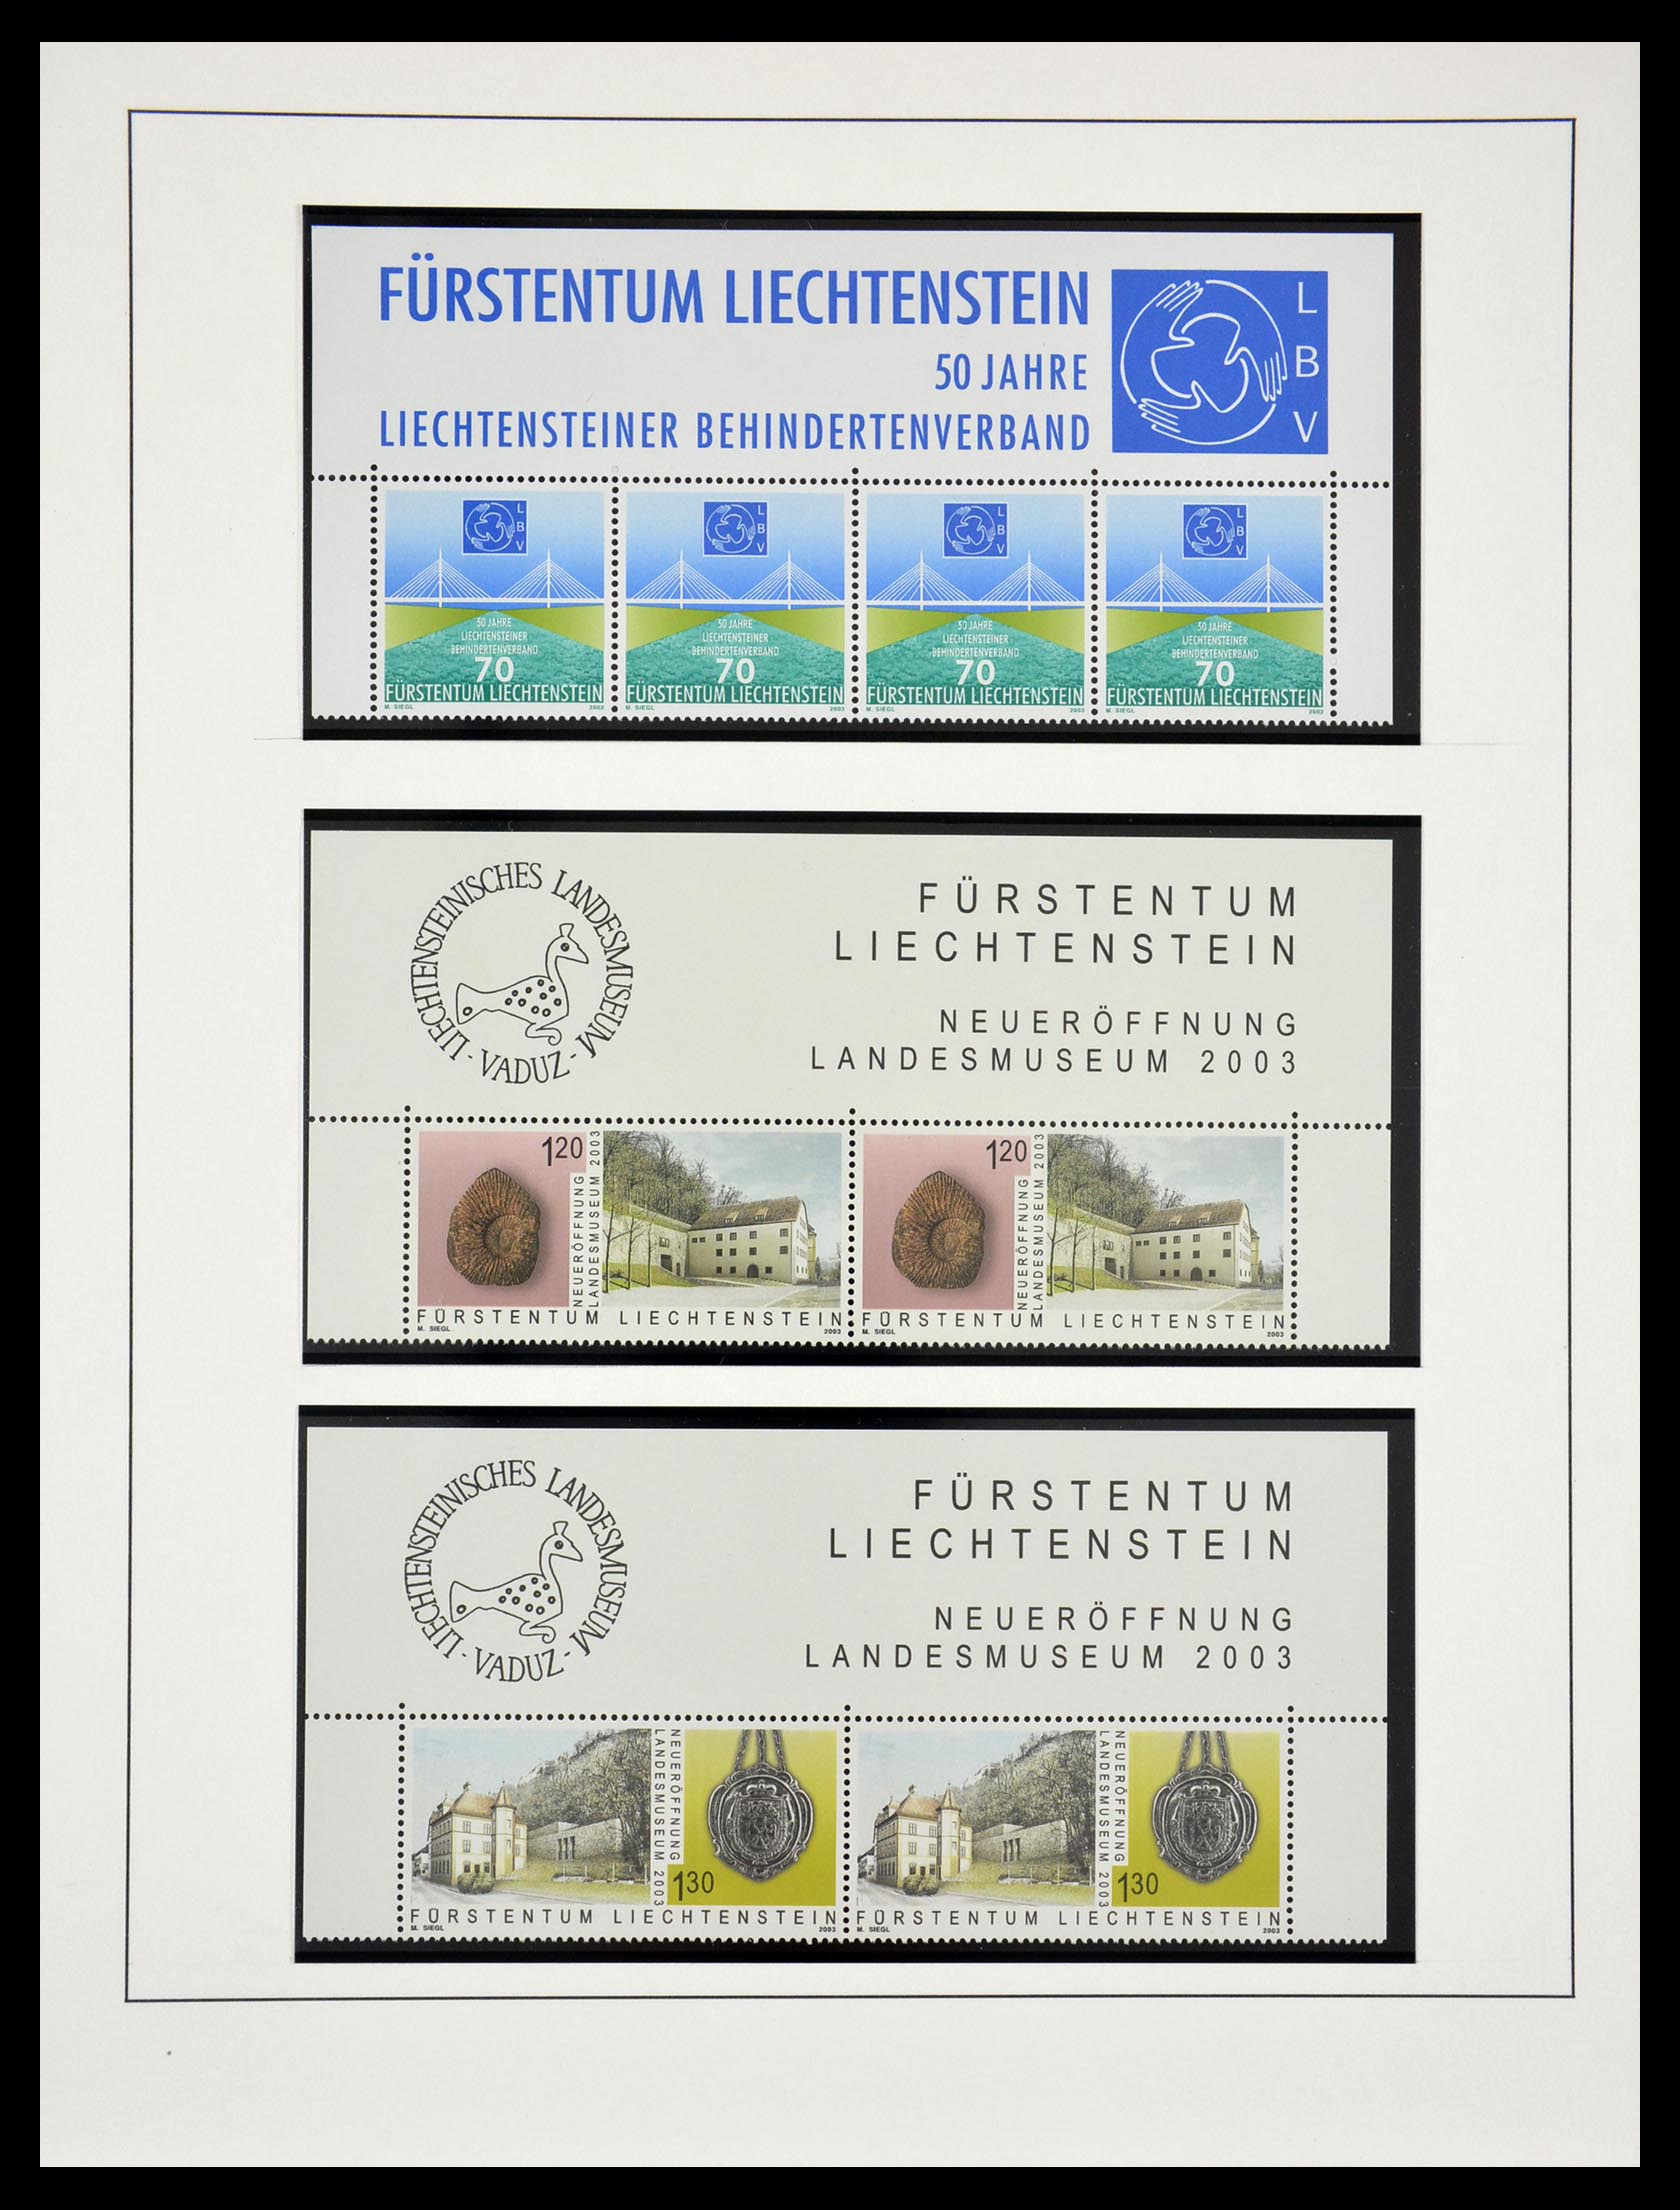 29038 082 - 29038 Liechtenstein 1996-2015.